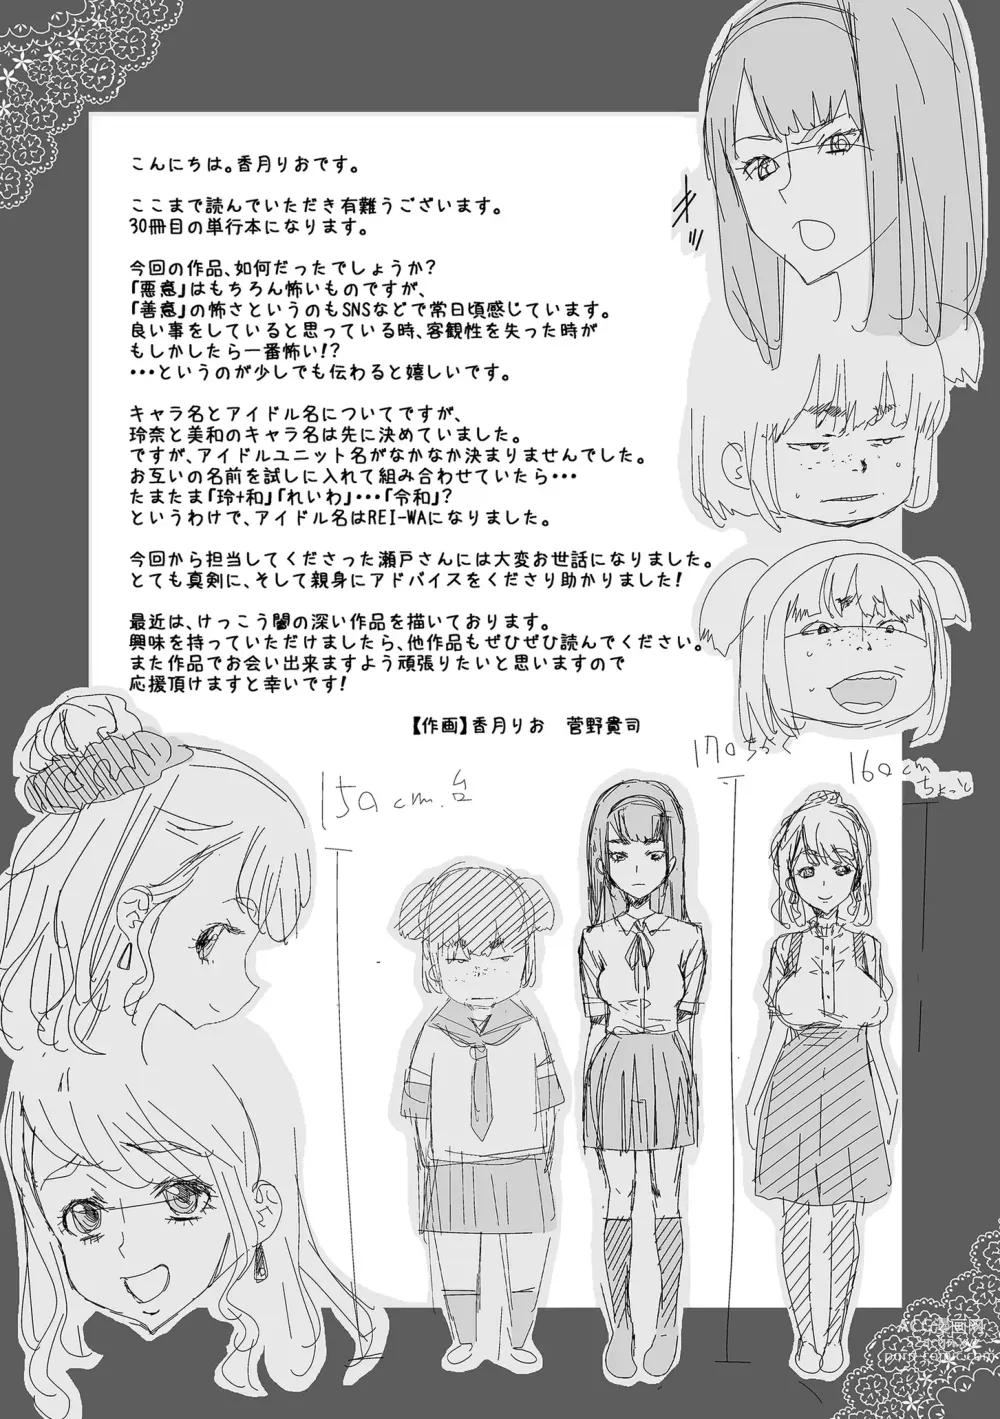 Page 193 of manga Idol Kankin Live!